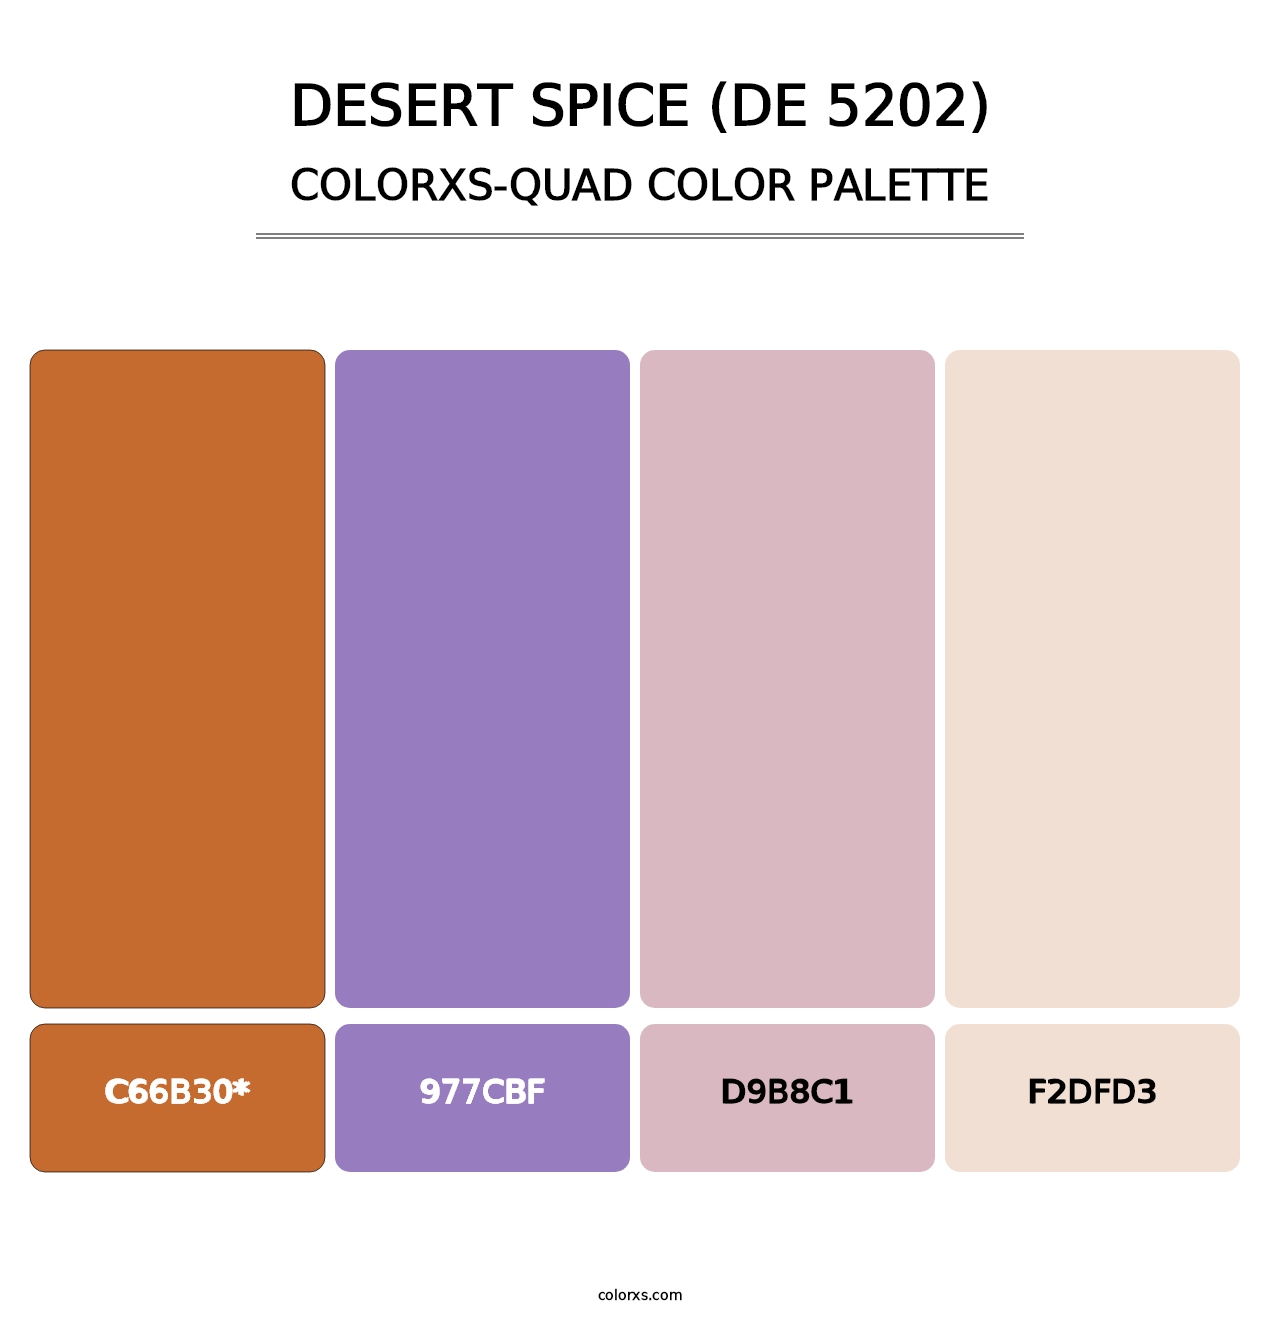 Desert Spice (DE 5202) - Colorxs Quad Palette